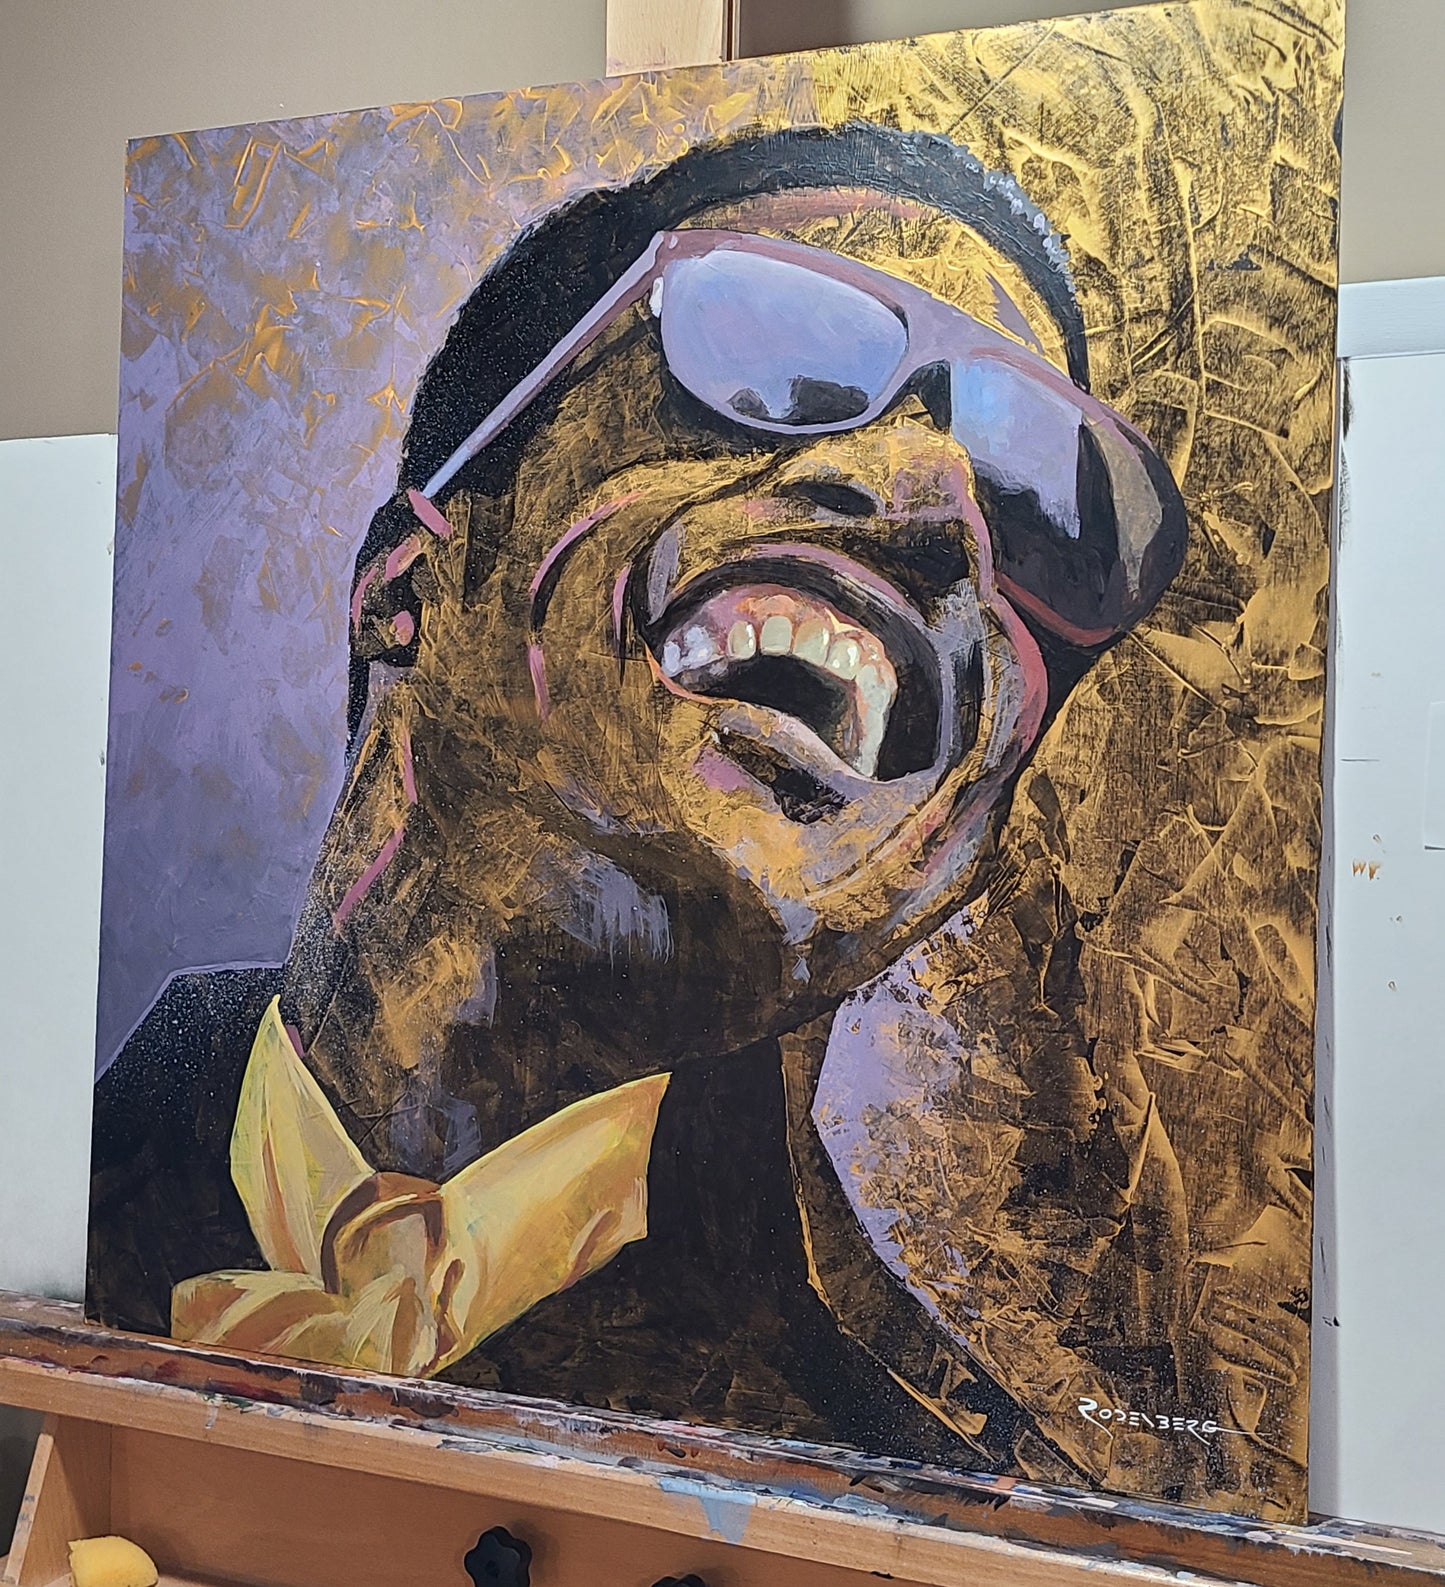 Stevie Wonder painting